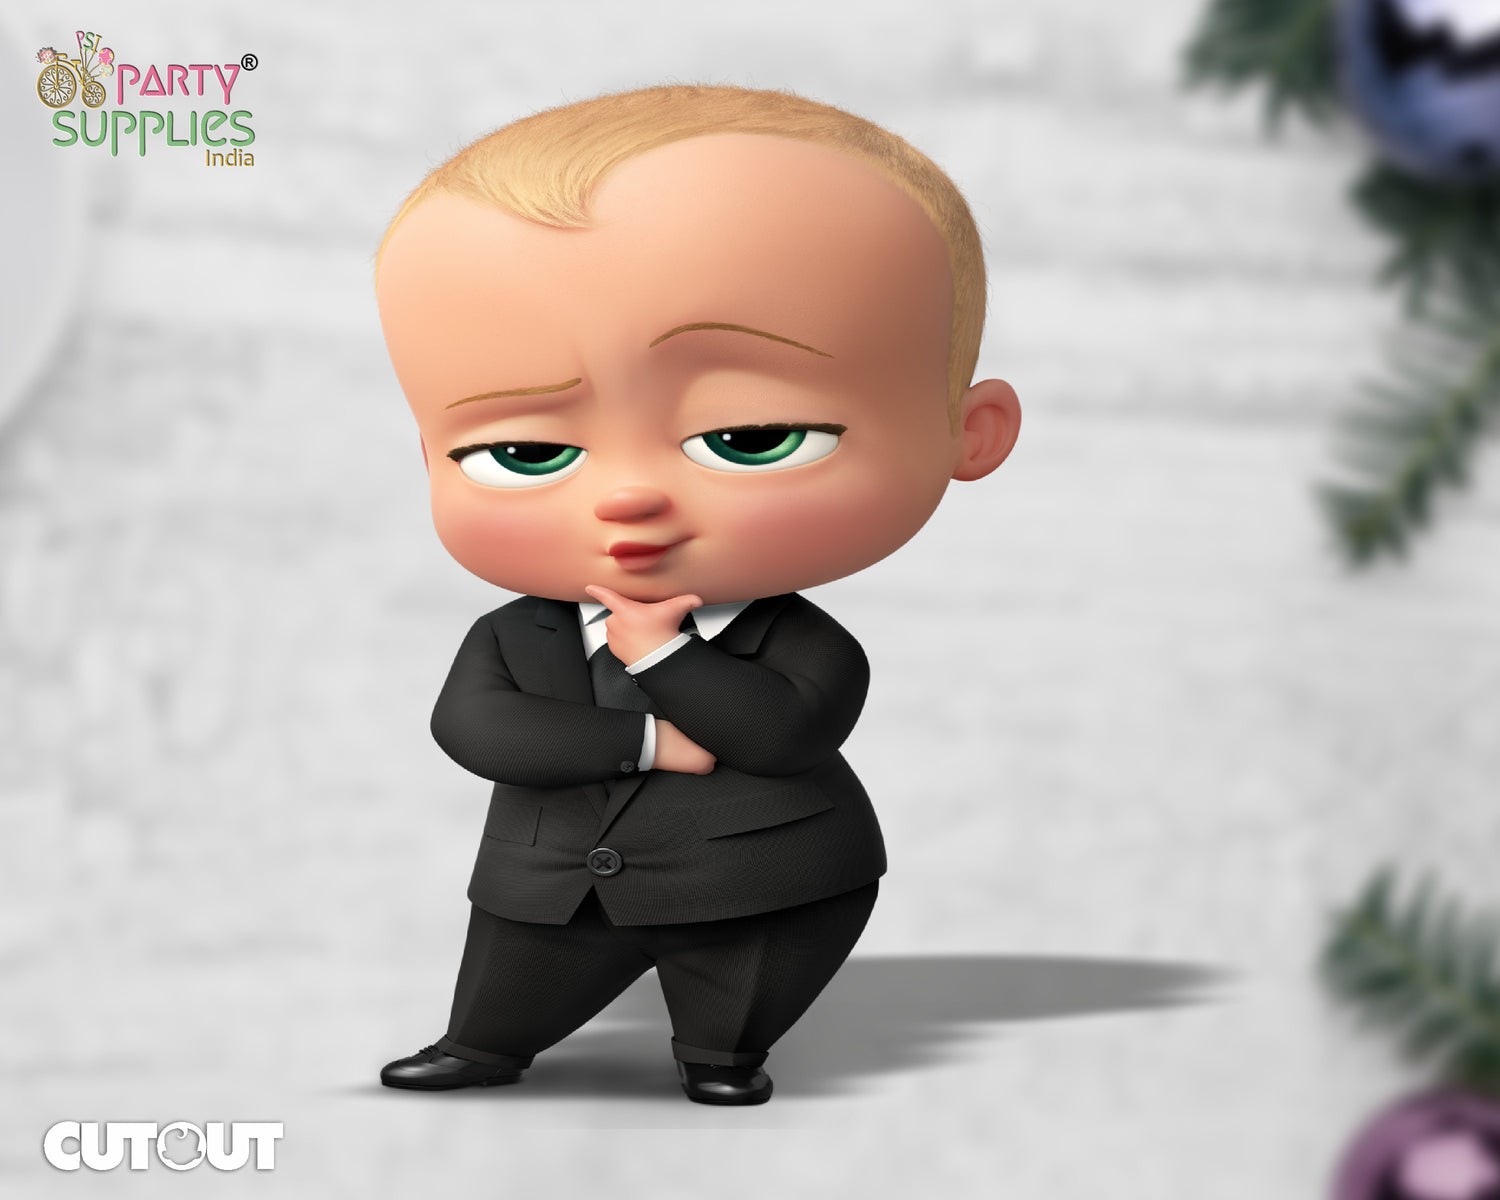 PSI Boss Baby Theme Cutout - 04